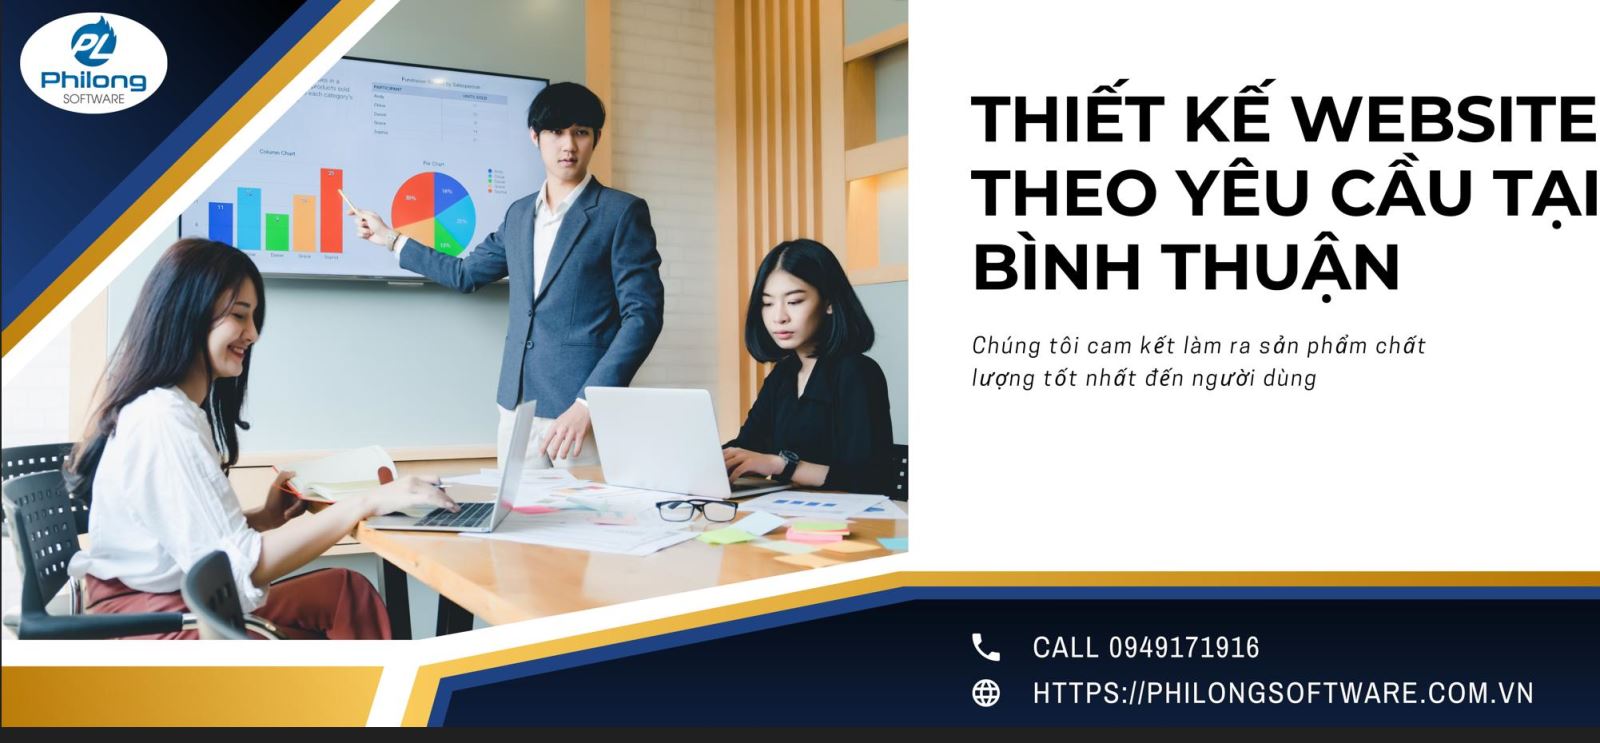 Thiết kế website theo yêu cầu tại Bình Thuận | Phan Thiết | Uy tín | Giá rẻ